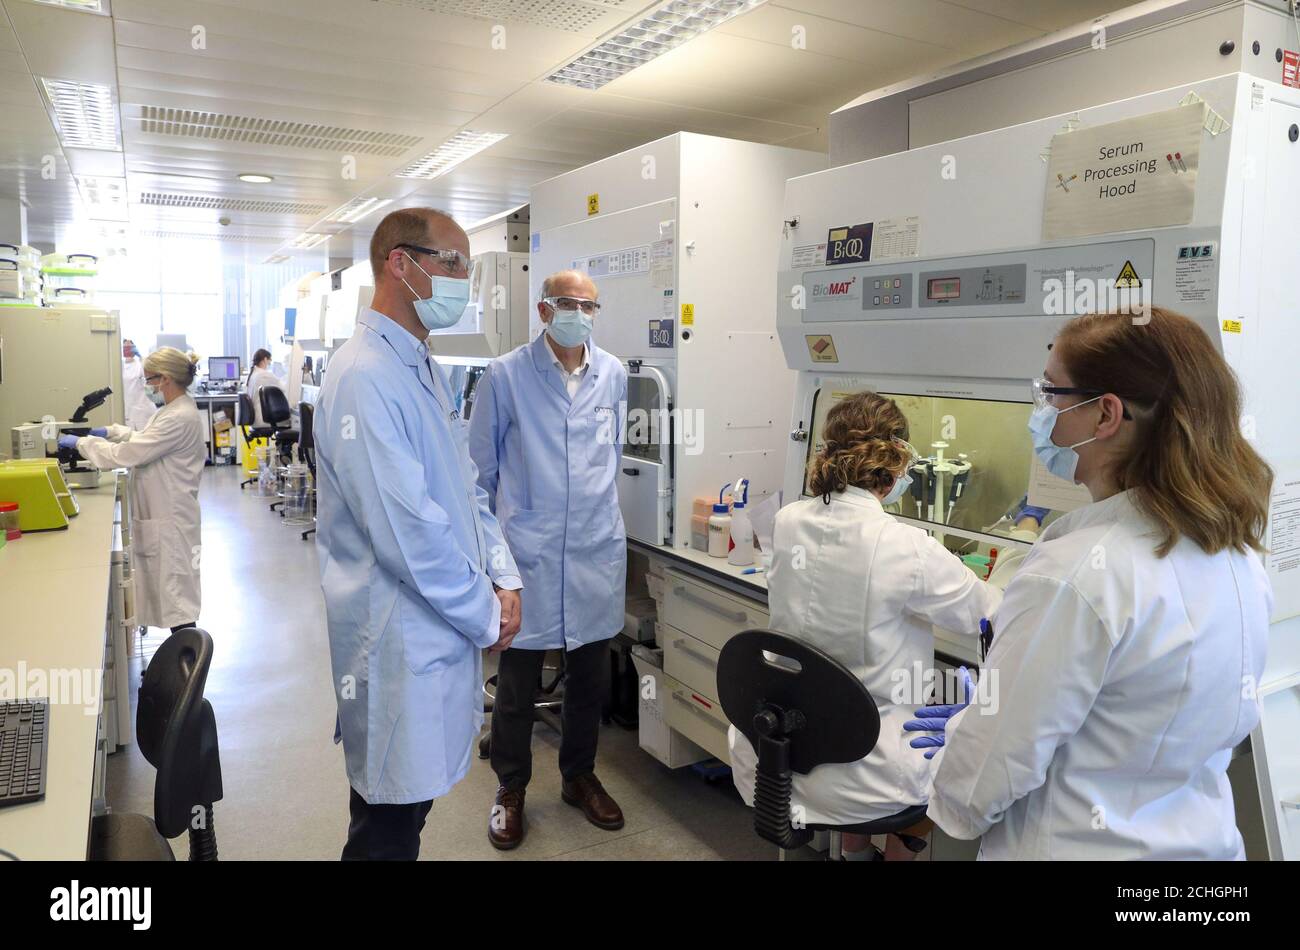 Le duc de Cambridge porte un masque lorsqu'il rencontre des scientifiques, dont Christina Dold (à droite), lors d'une visite au laboratoire de fabrication où un vaccin contre le COVID-19 a été produit dans les installations du groupe Oxford Vaccine Group à l'hôpital Churchill d'Oxford. Banque D'Images